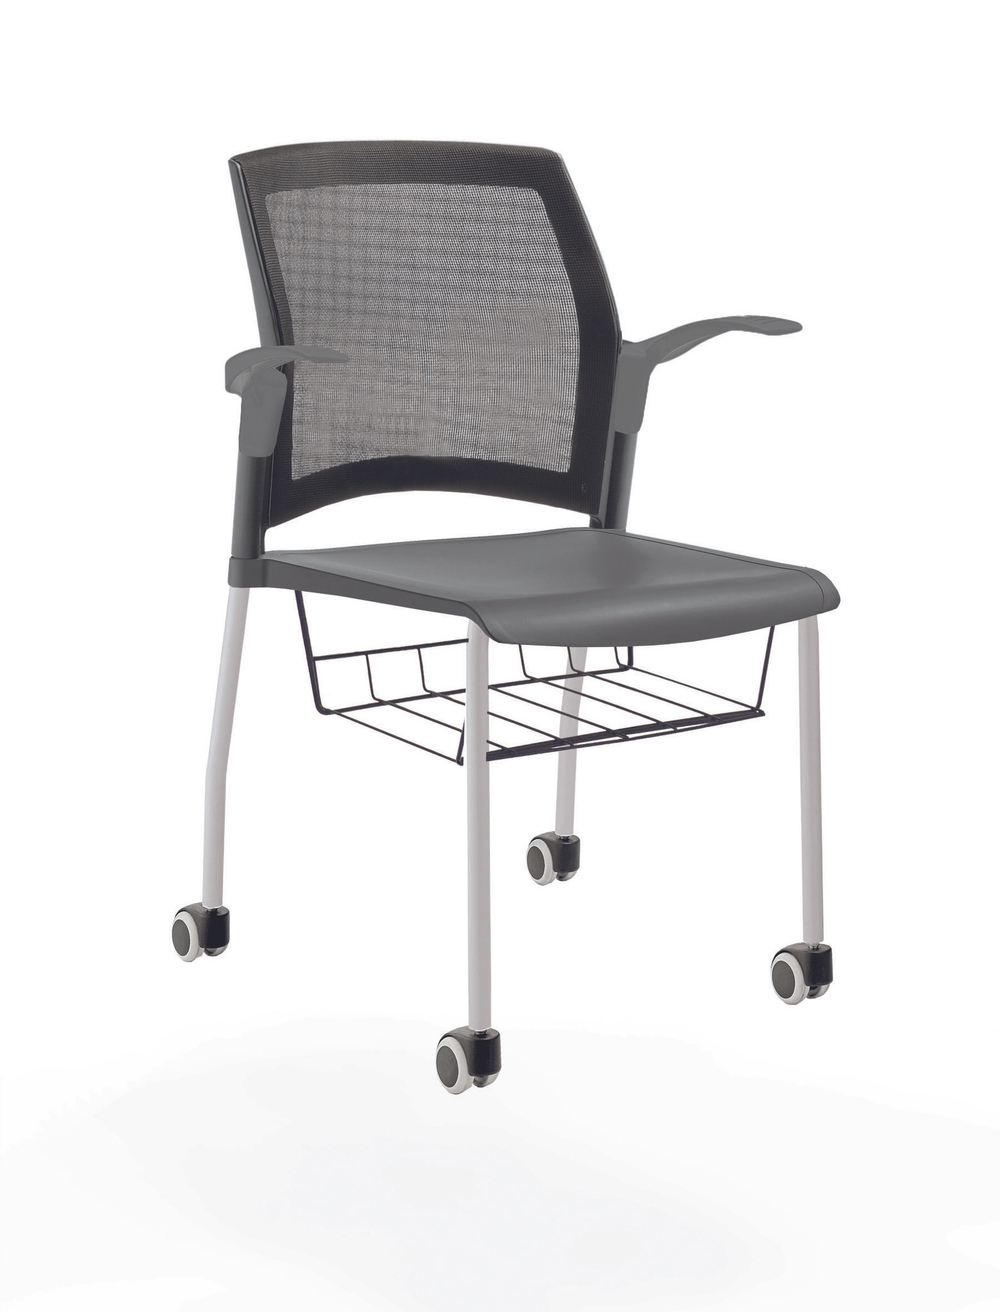 стул Rewind на 4 ногах и колесах, каркас серый, пластик серый, с открытыми подлокотниками, с подседельной корзиной, спинка-сетка